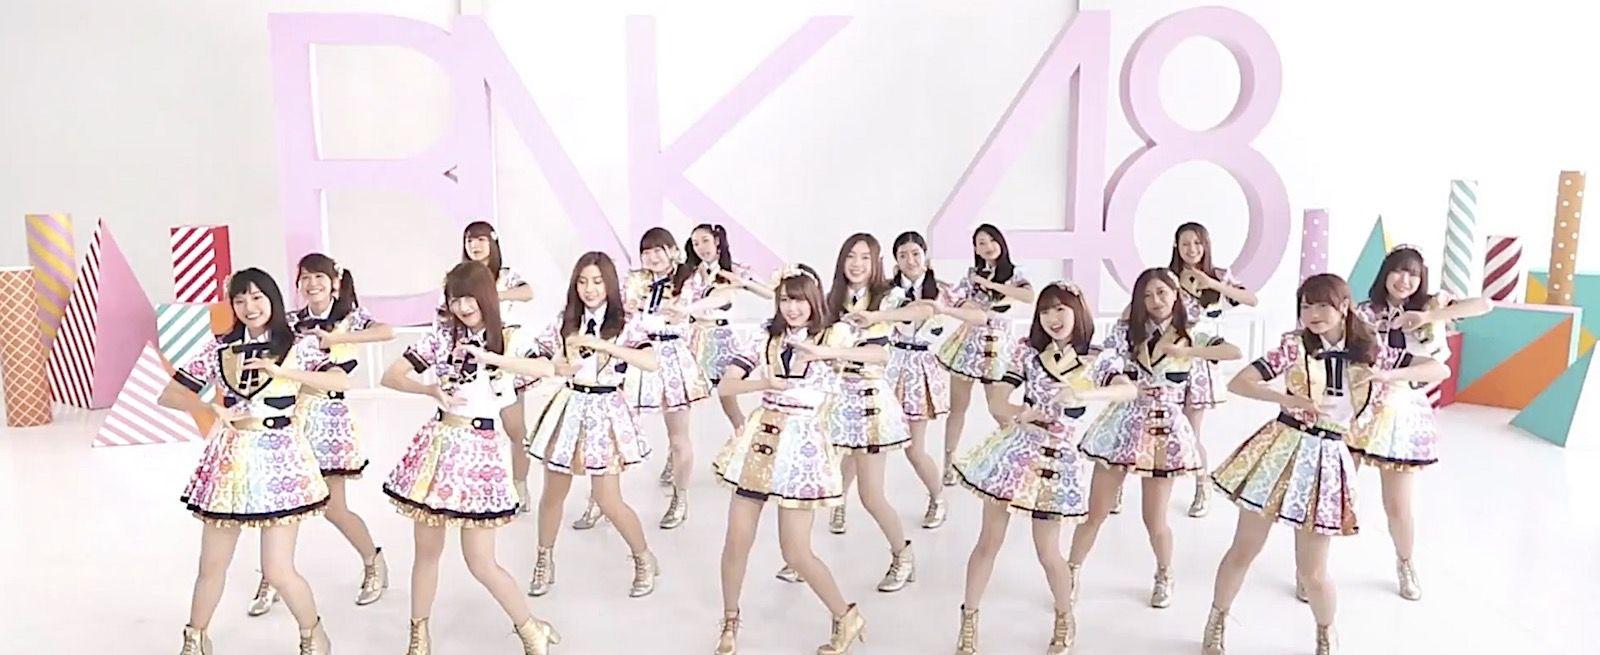 บทความพิเศษ, เบื้องหลัง MV ครั้งแรกของ 'BNK48' เพลง 'คุกกี้